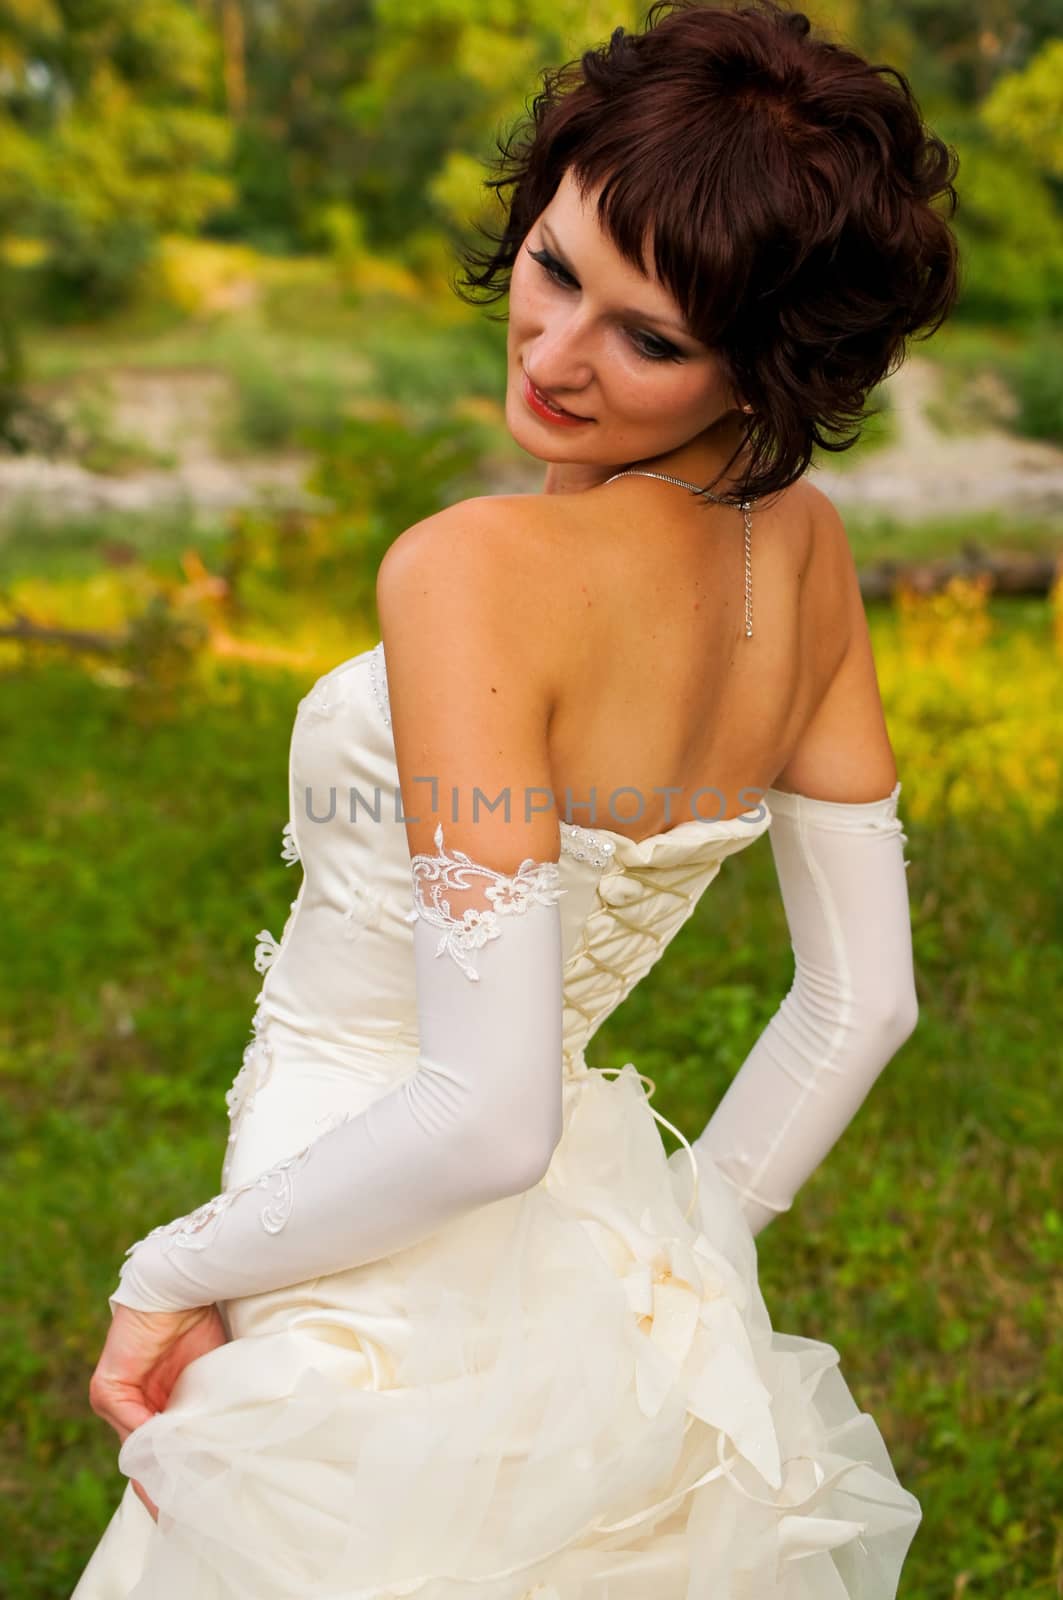 the lovely girl in a wedding dress by Viktoha